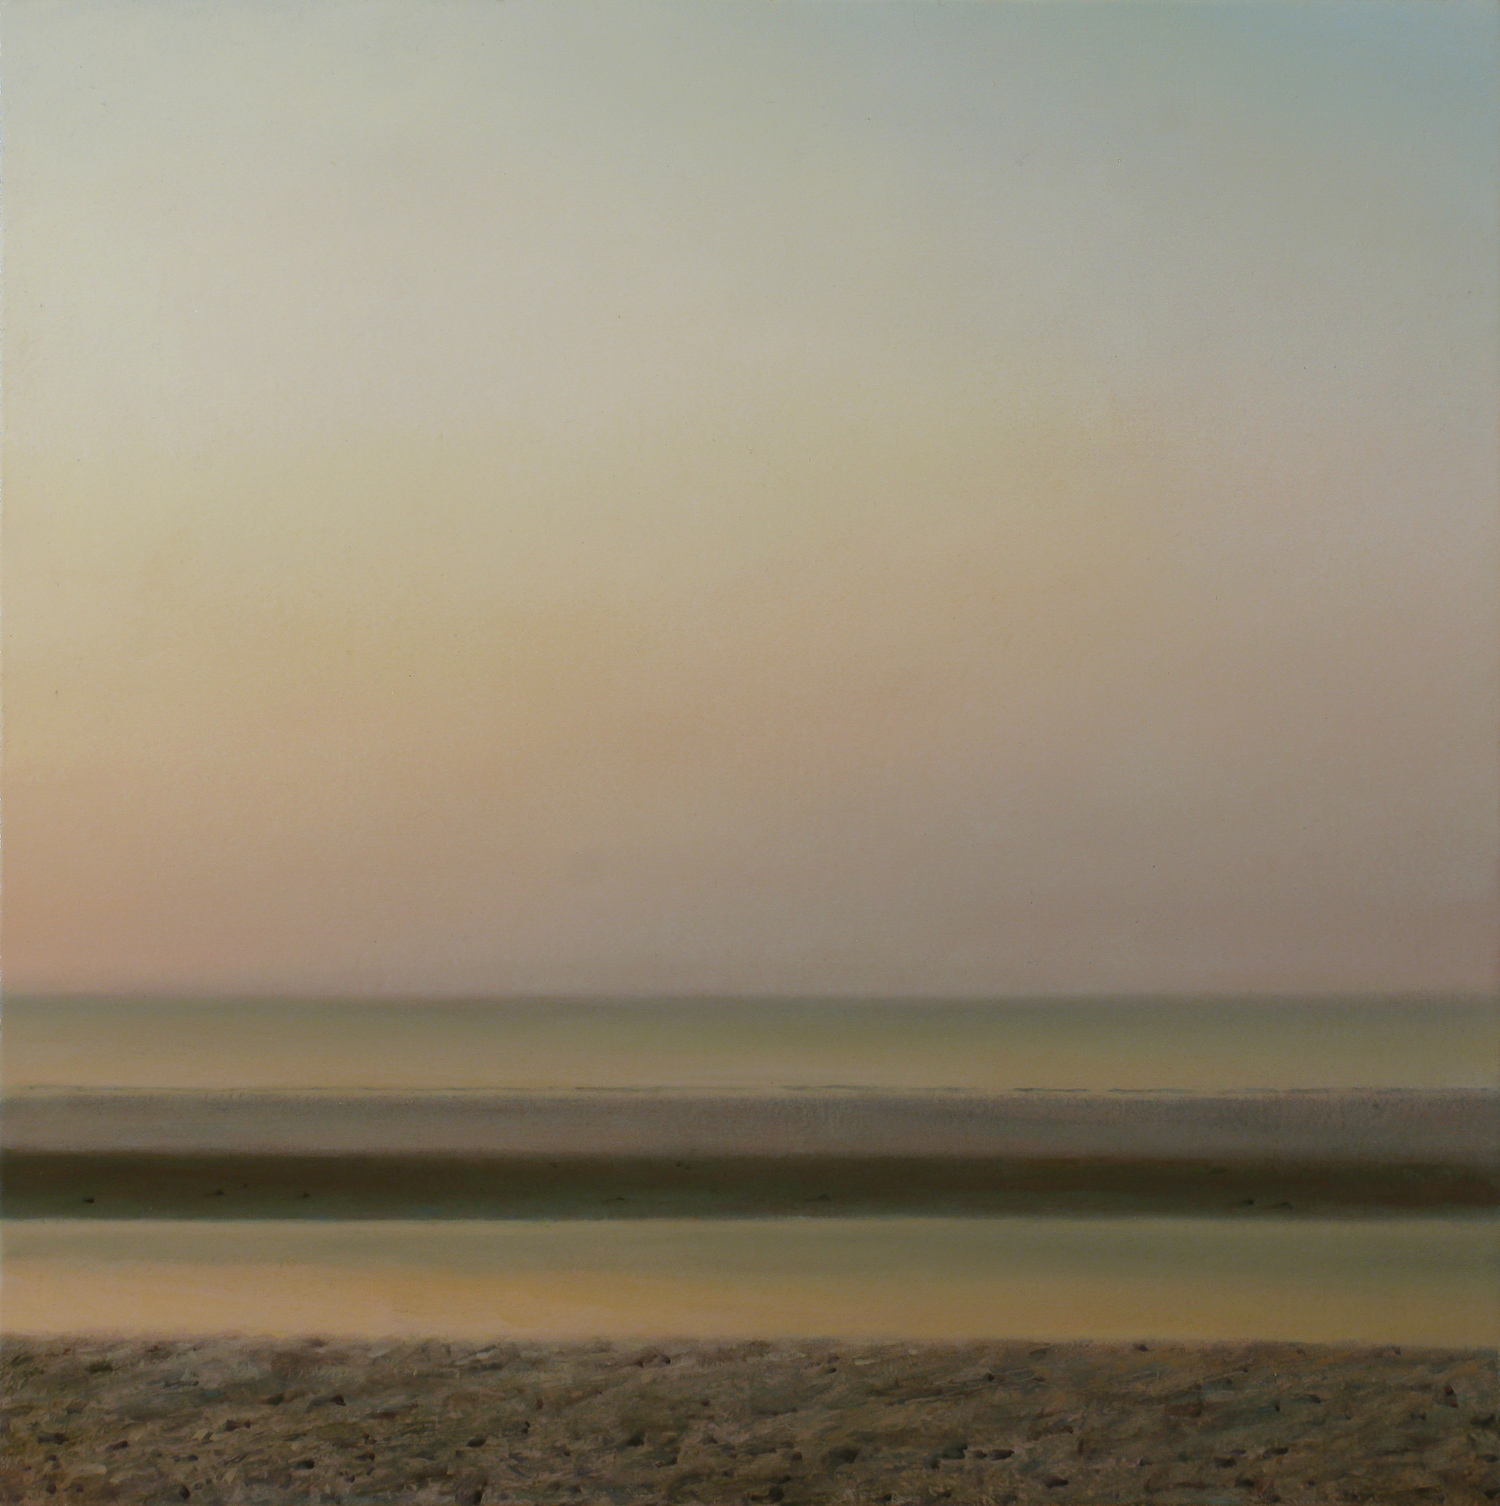 Lake of Dawn by Peter J. O'Halloran